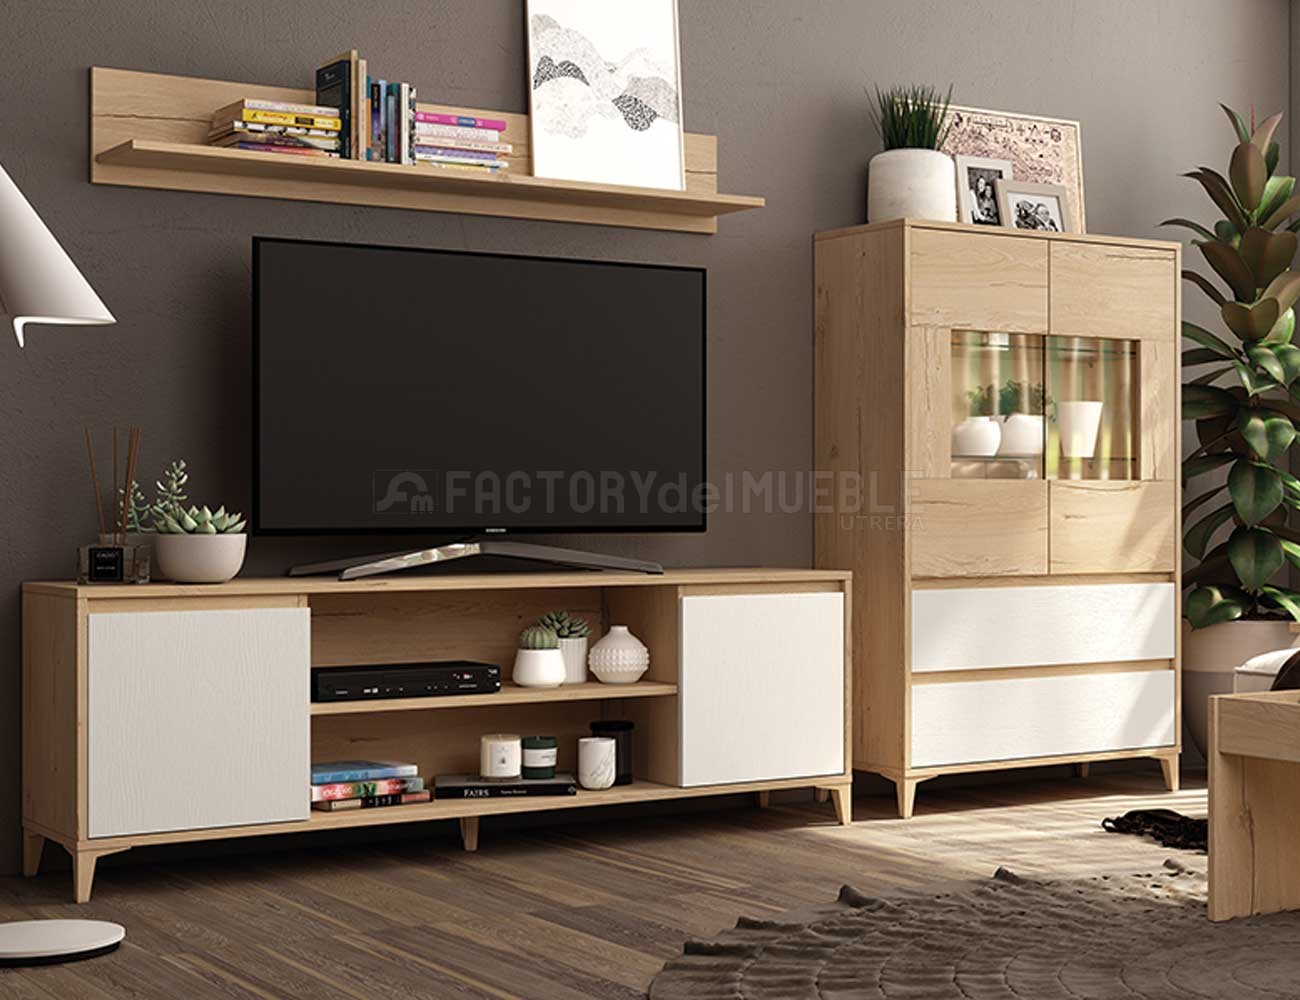 Mueble de salón moderno con bajo tv y vitrina (35046)